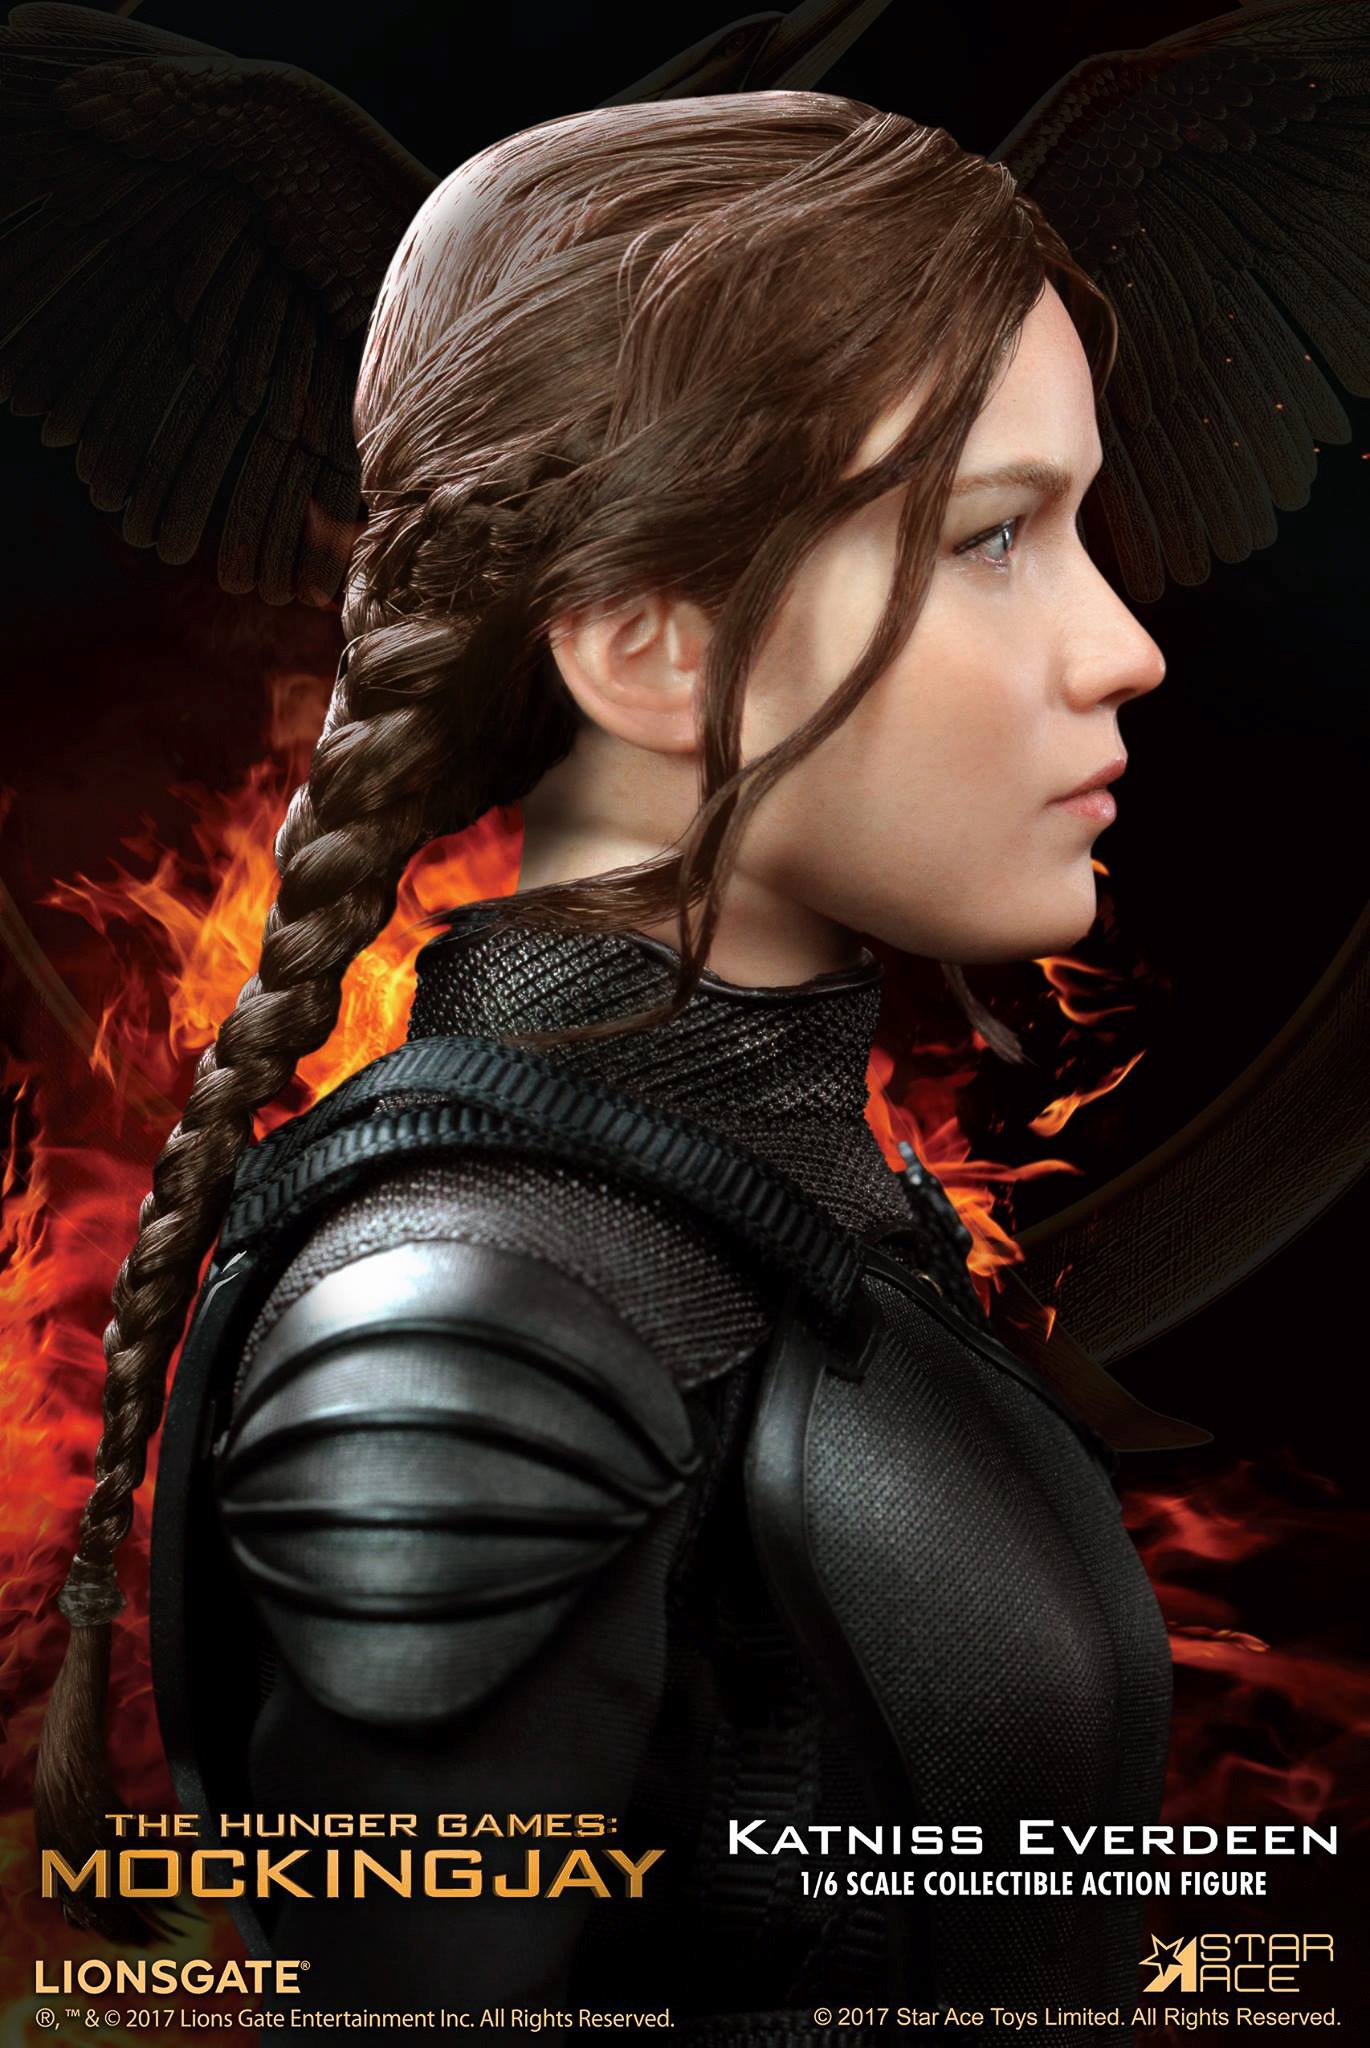 Star-Ace-Toys-Ltd-Katniss-Everdeen-Mockingjay-006.jpg